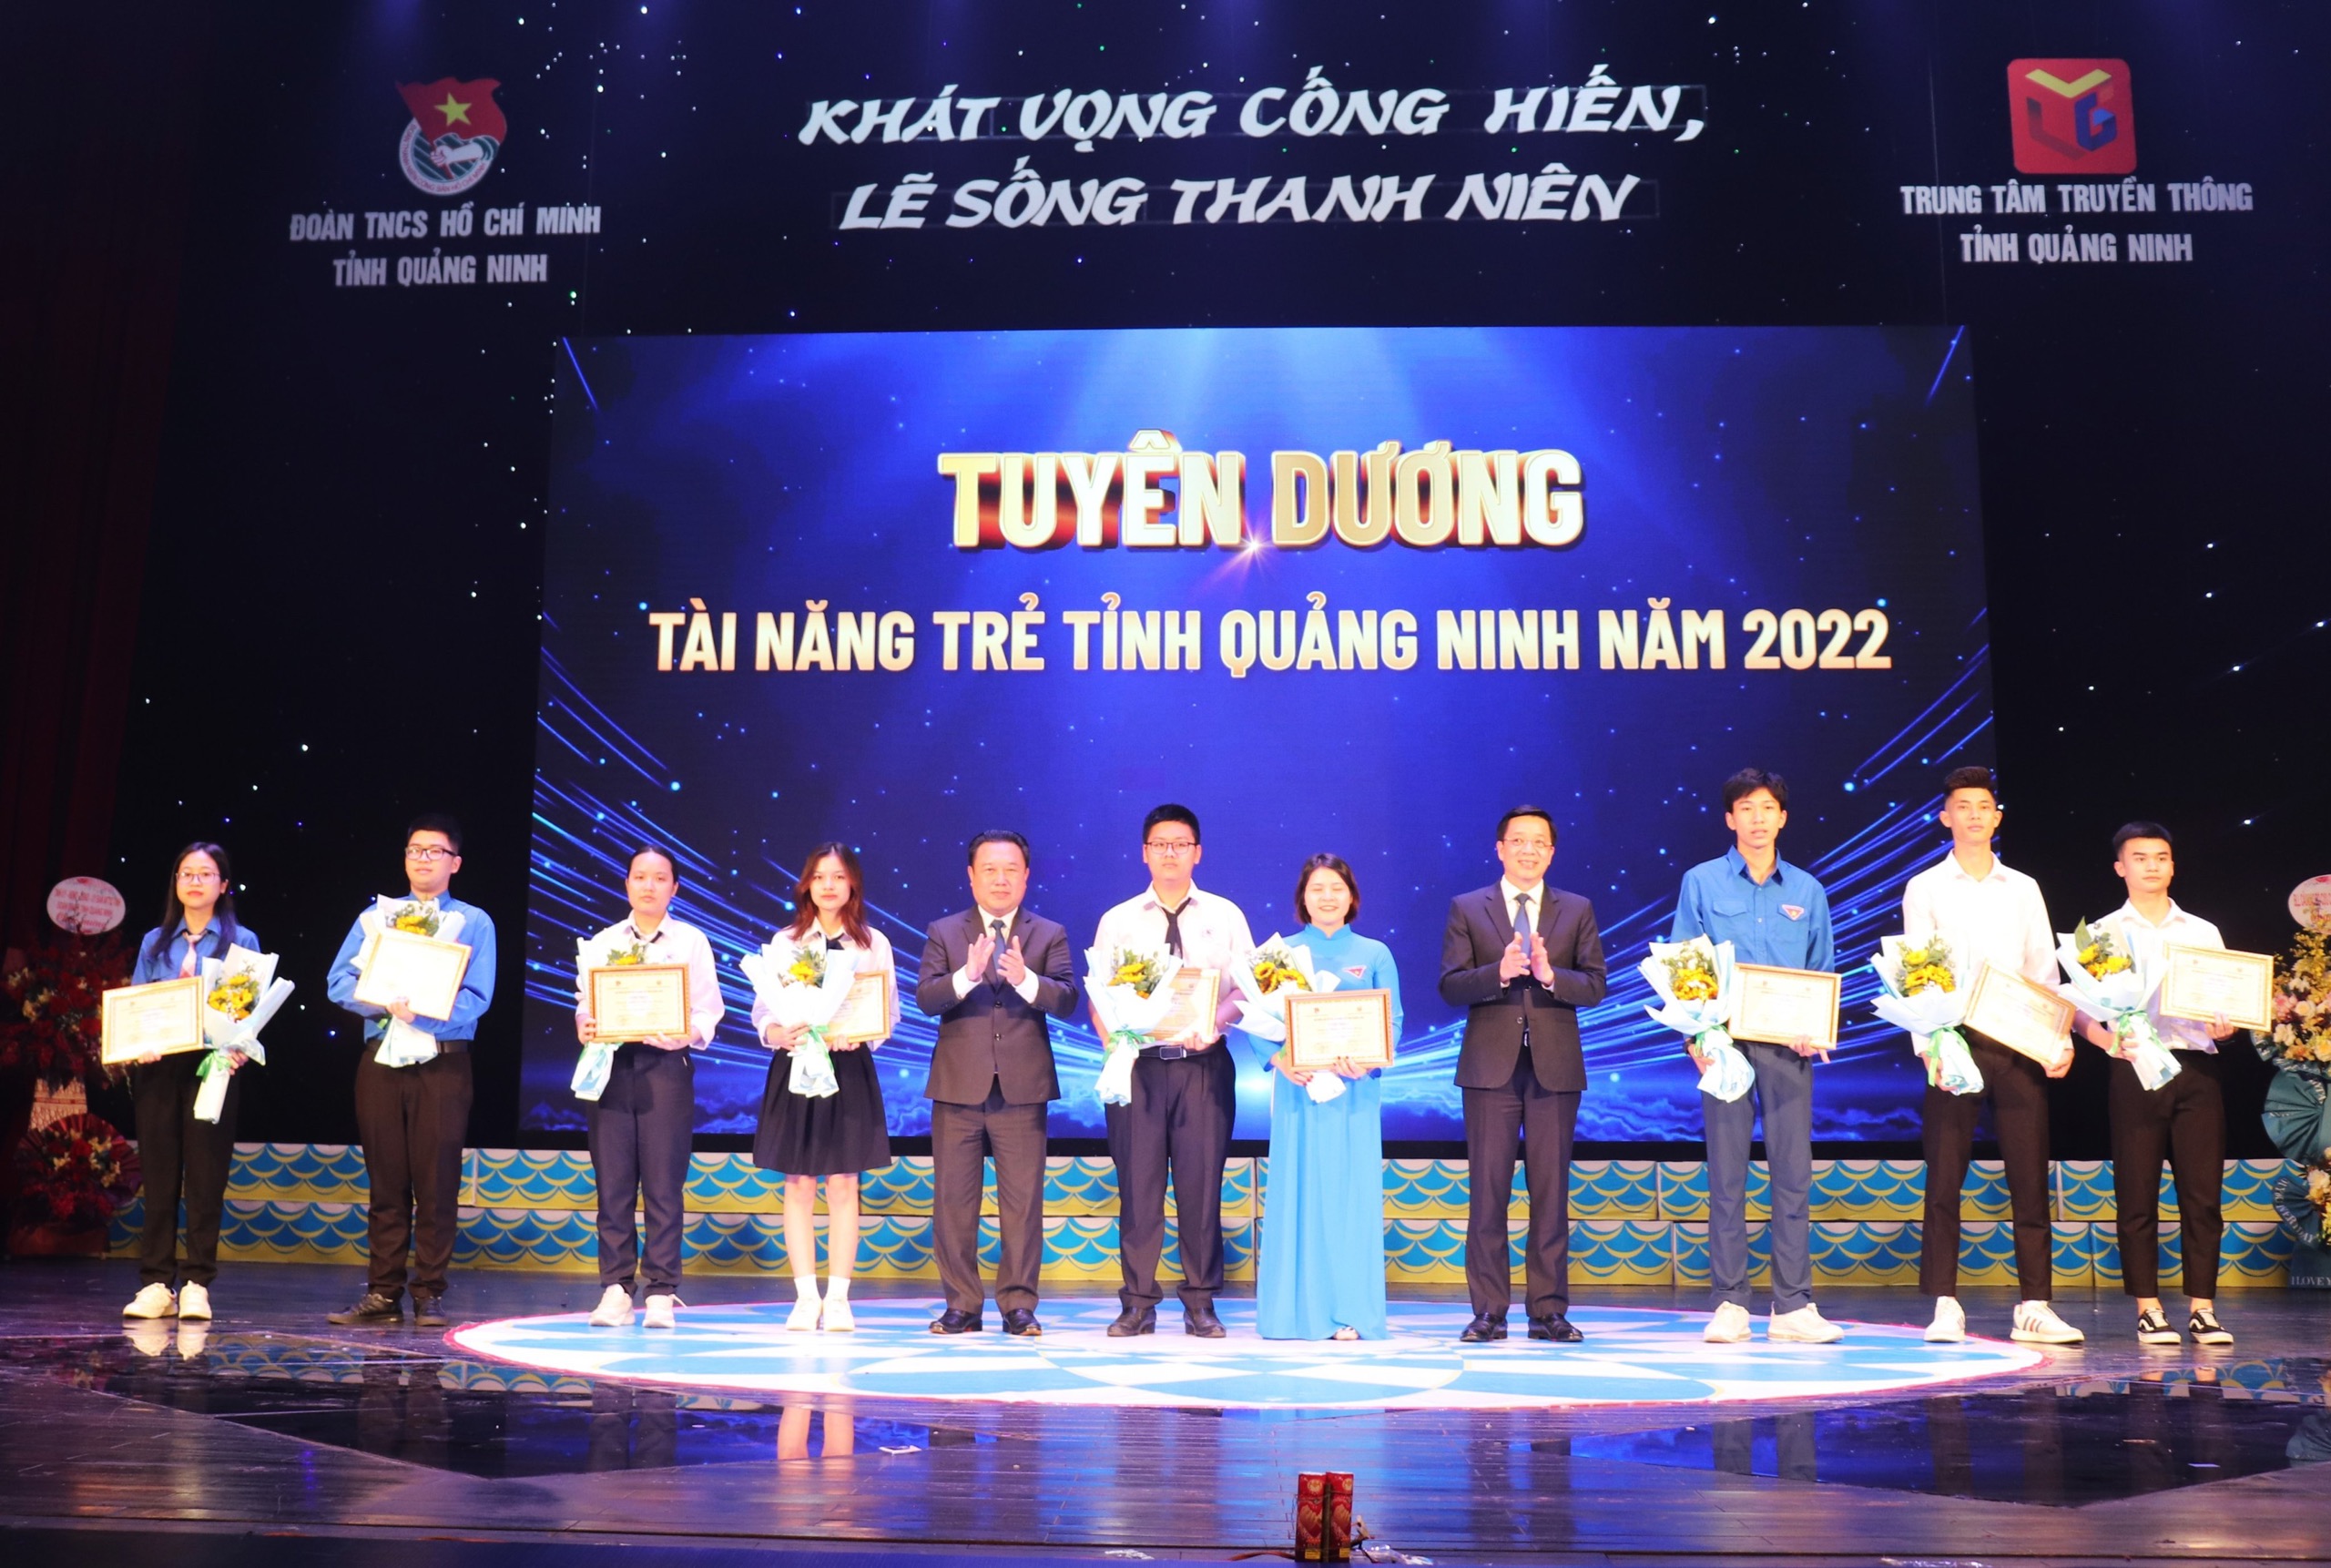 Các đồng chí Nguyễn Đức Thành và Nguyễn Văn Hồi tuyên dương các Tài năng trẻ tỉnh Quảng Ninh năm 2022.